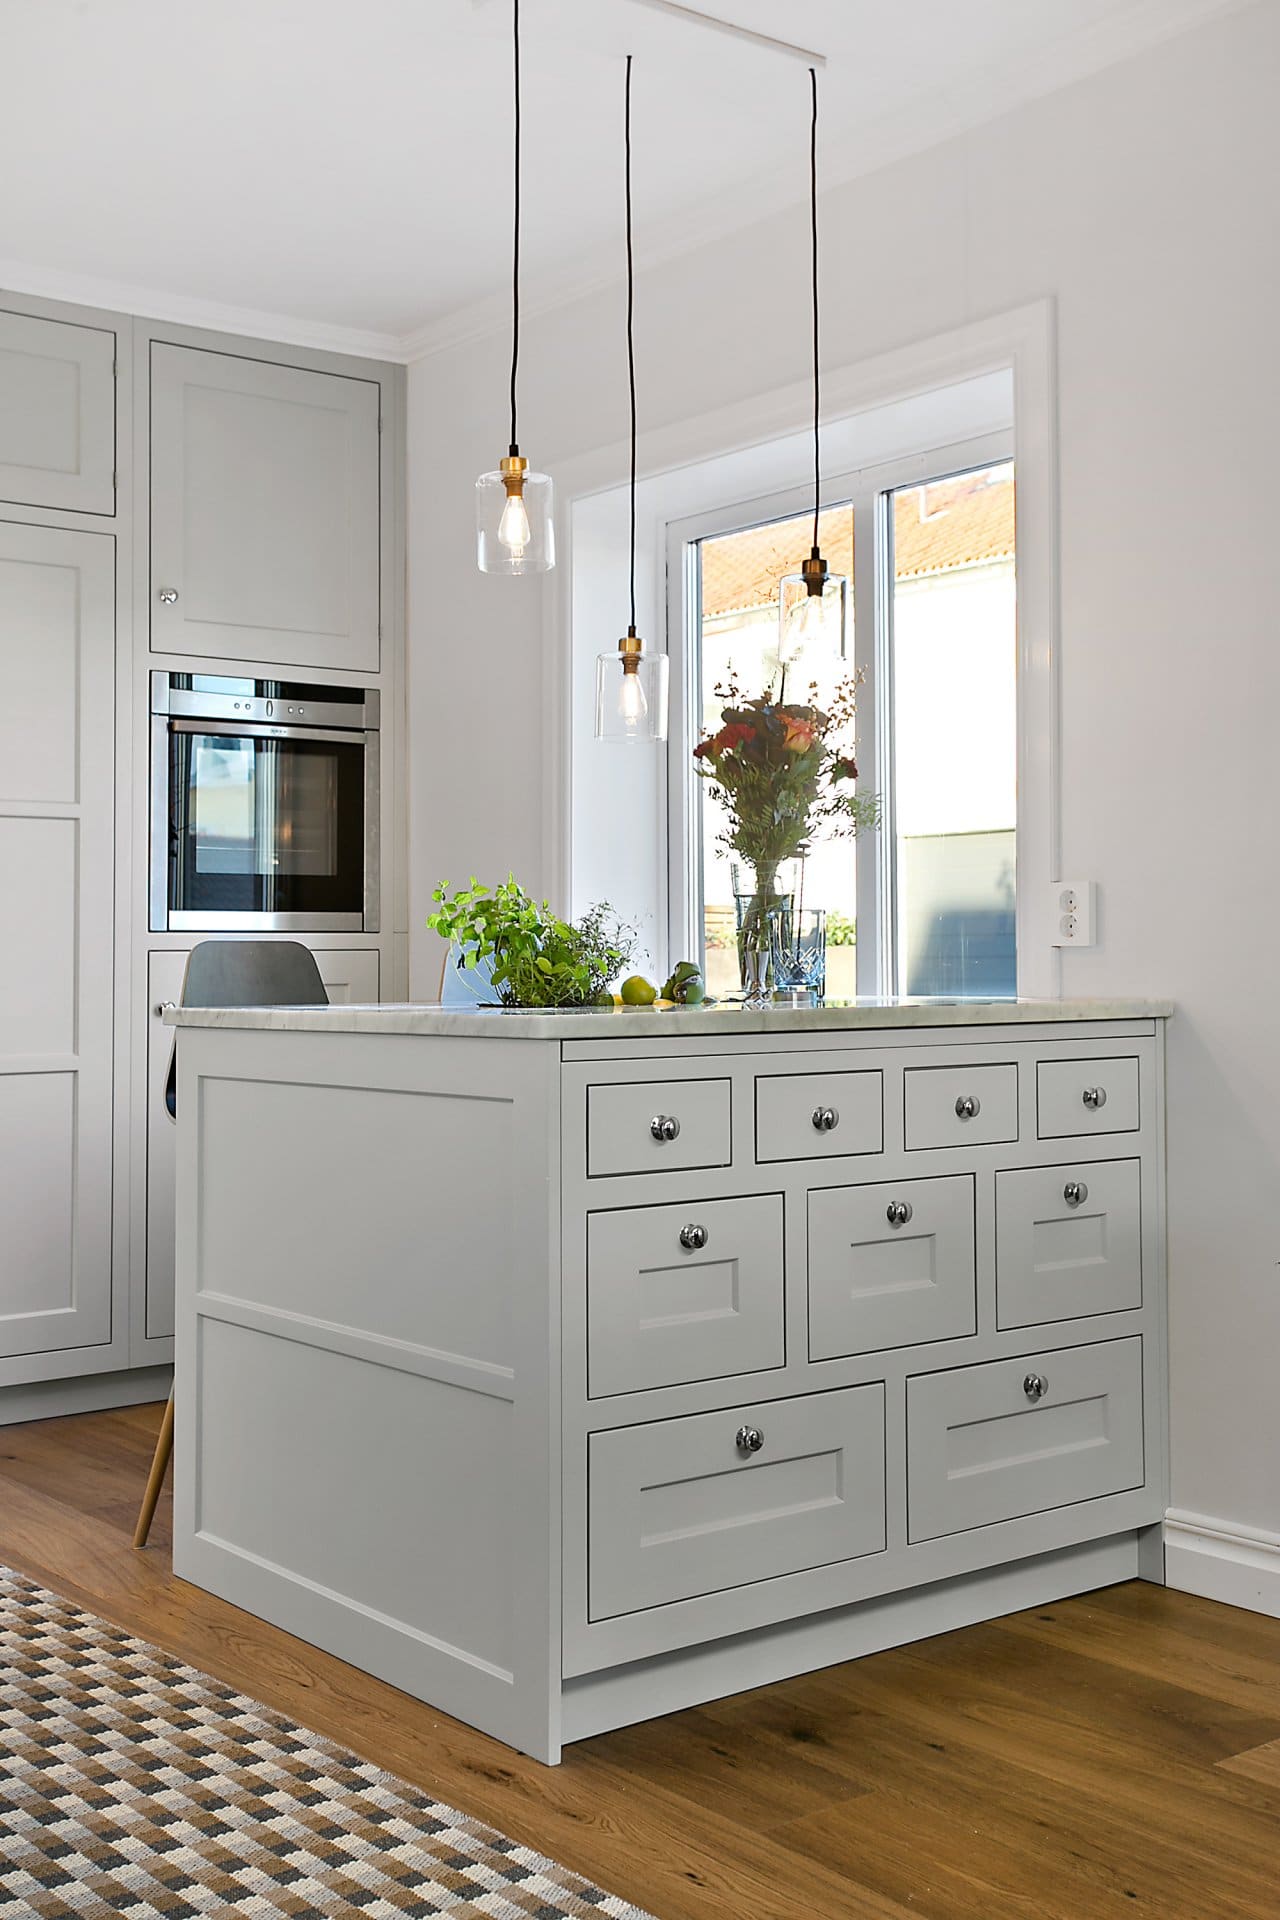 Stiligt - Ett kök med vita skåp och trägolv i klassisk stil.